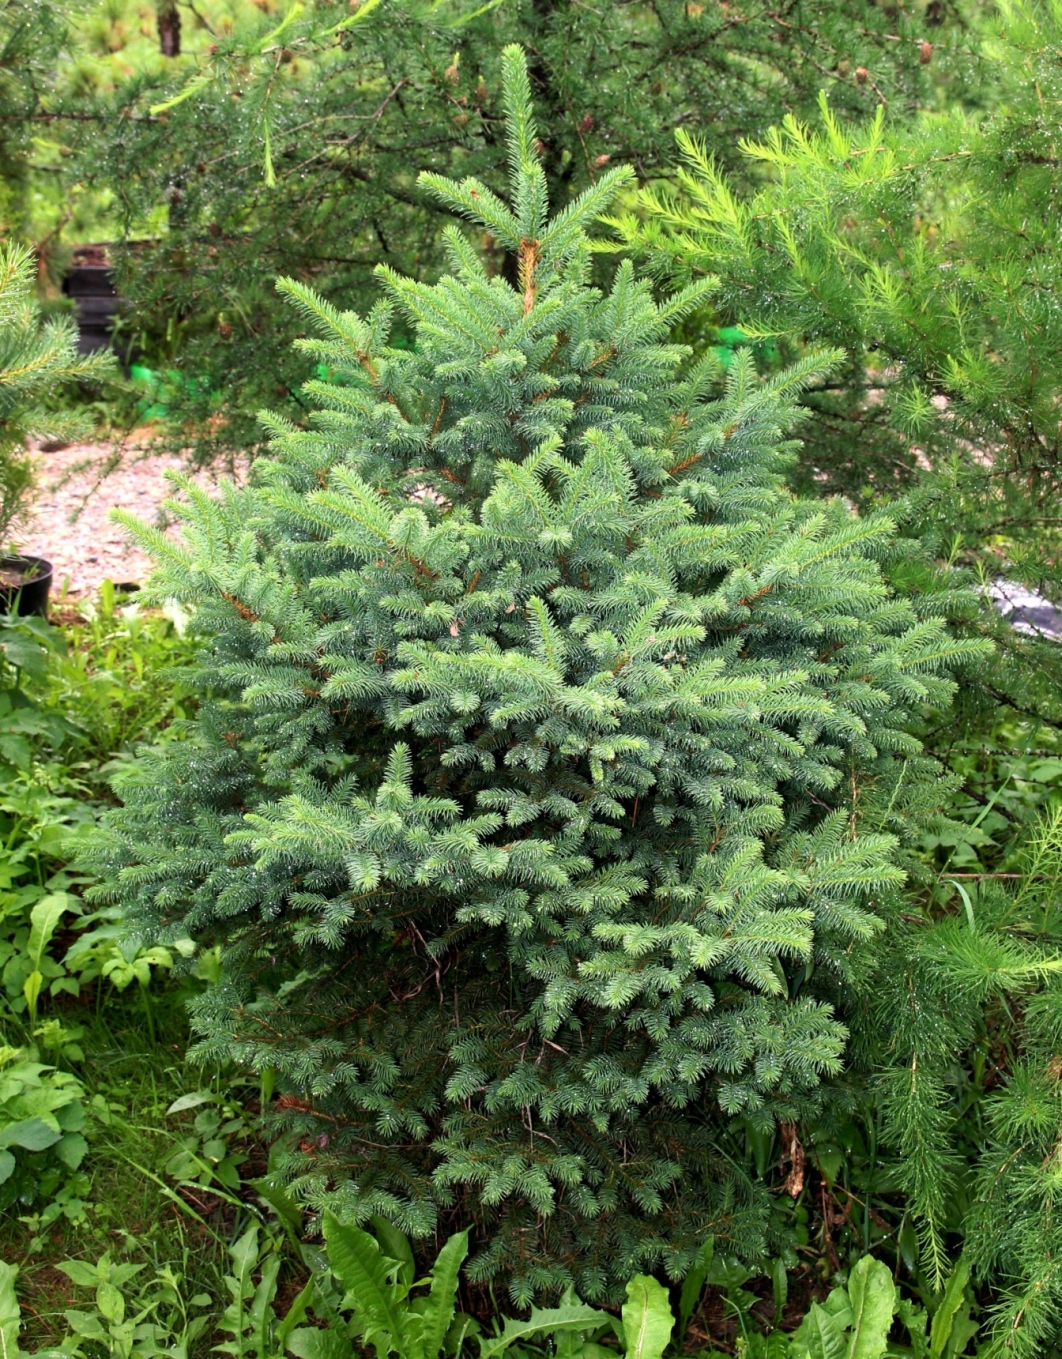 Многие российские виды хвойных встречаются в наших садах, на два порядка реже, чем заграничные. Это безобразие. Мы делаем всё, чтобы испытать эти виды, ввести их в культуру. На снимке ель корейская (Picea koraiensis) – декоративный и устойчивый на юге Сибири вид.